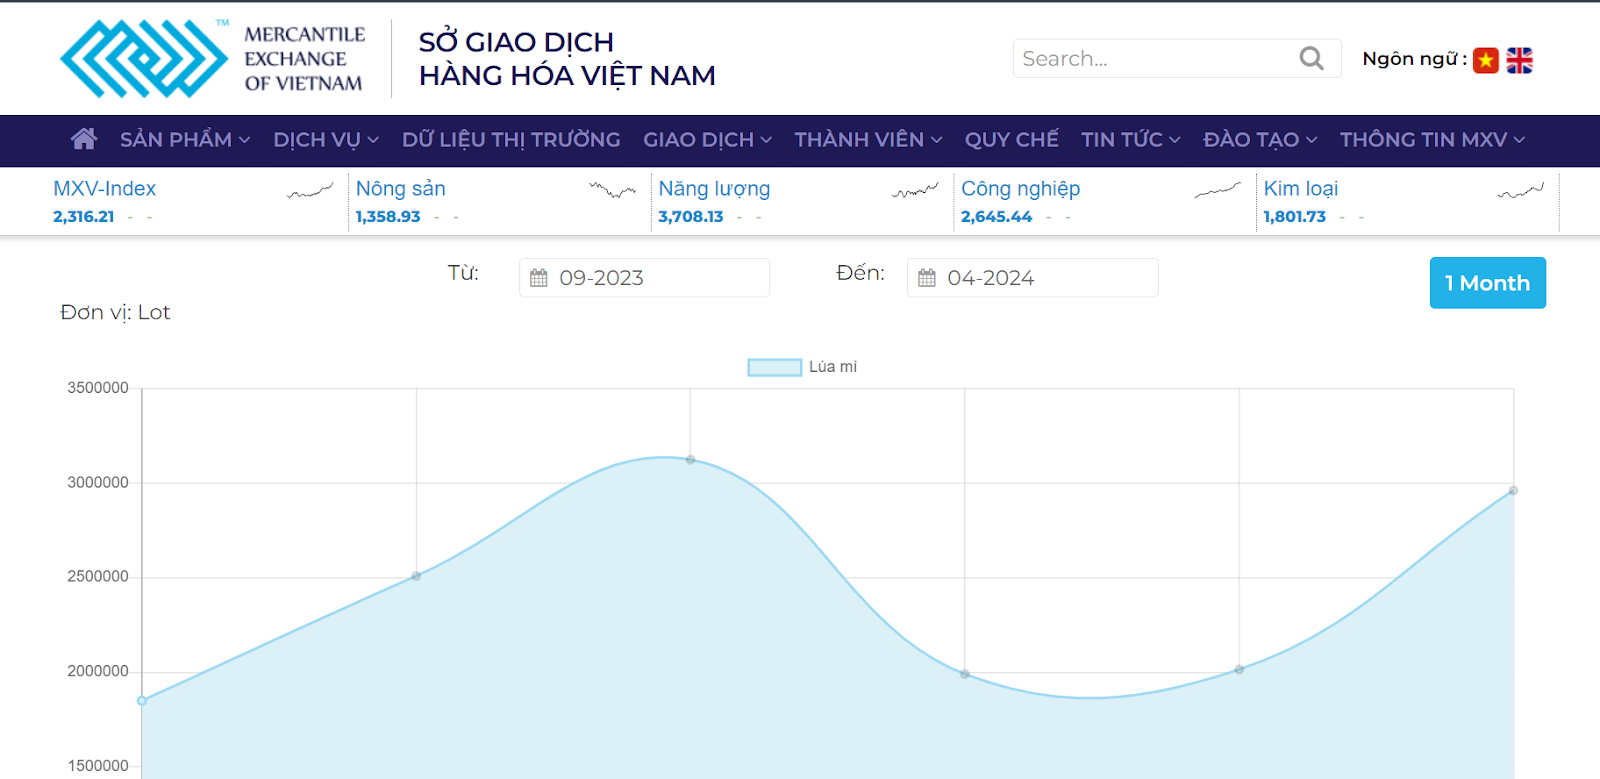 Thị trường lúa mì Việt Nam ghi nhận sự thay đổi rất lớn trong khối lượng giao dịch trong giai đoạn cuối năm 2023 - đầu năm 2024